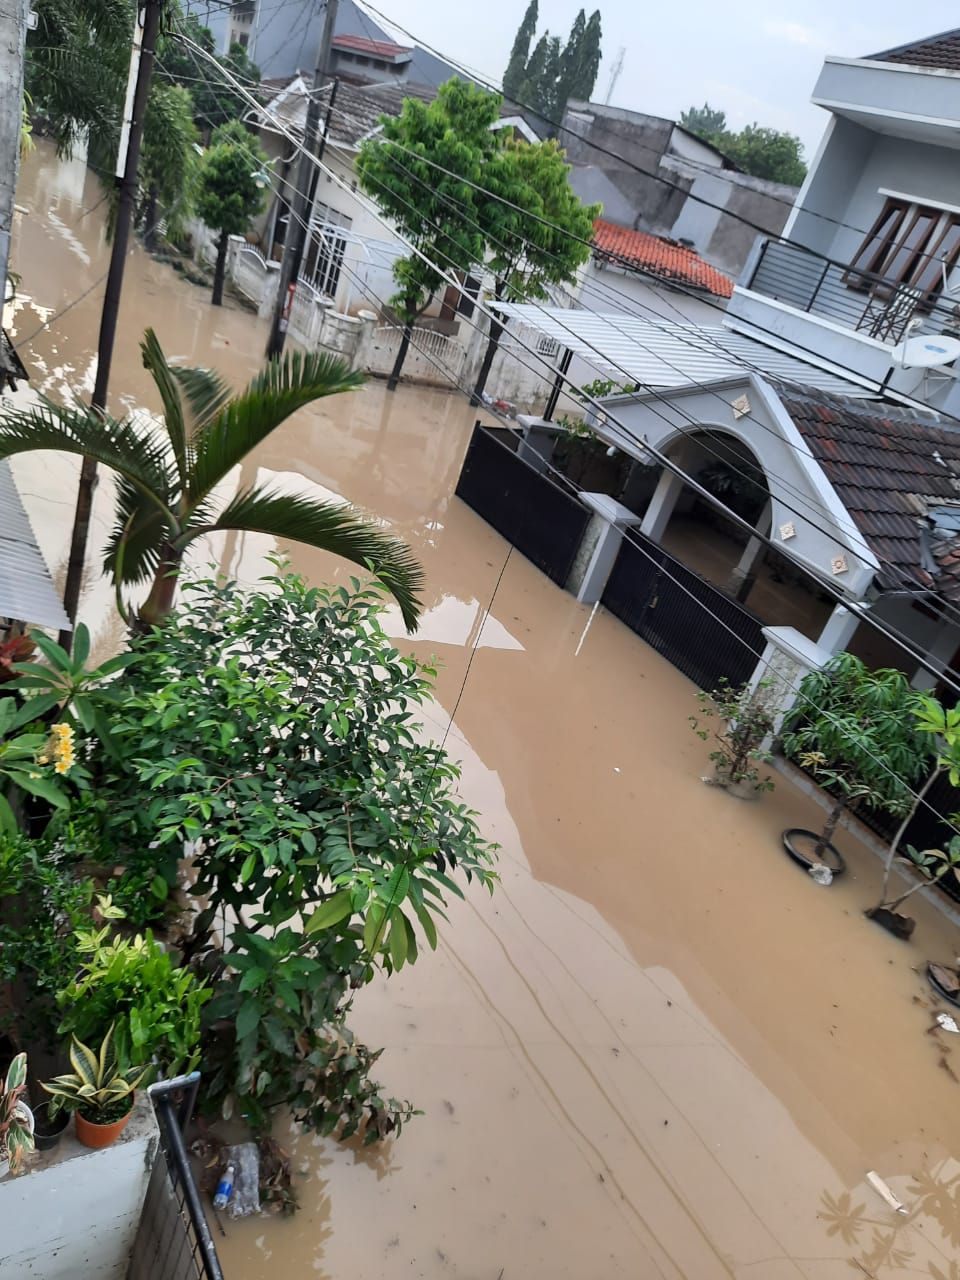 Banjir masih menggenangi kawasan perumahan Vila Indah, Gunung Puteri, Bogor, Minggu 25 Oktober 2020